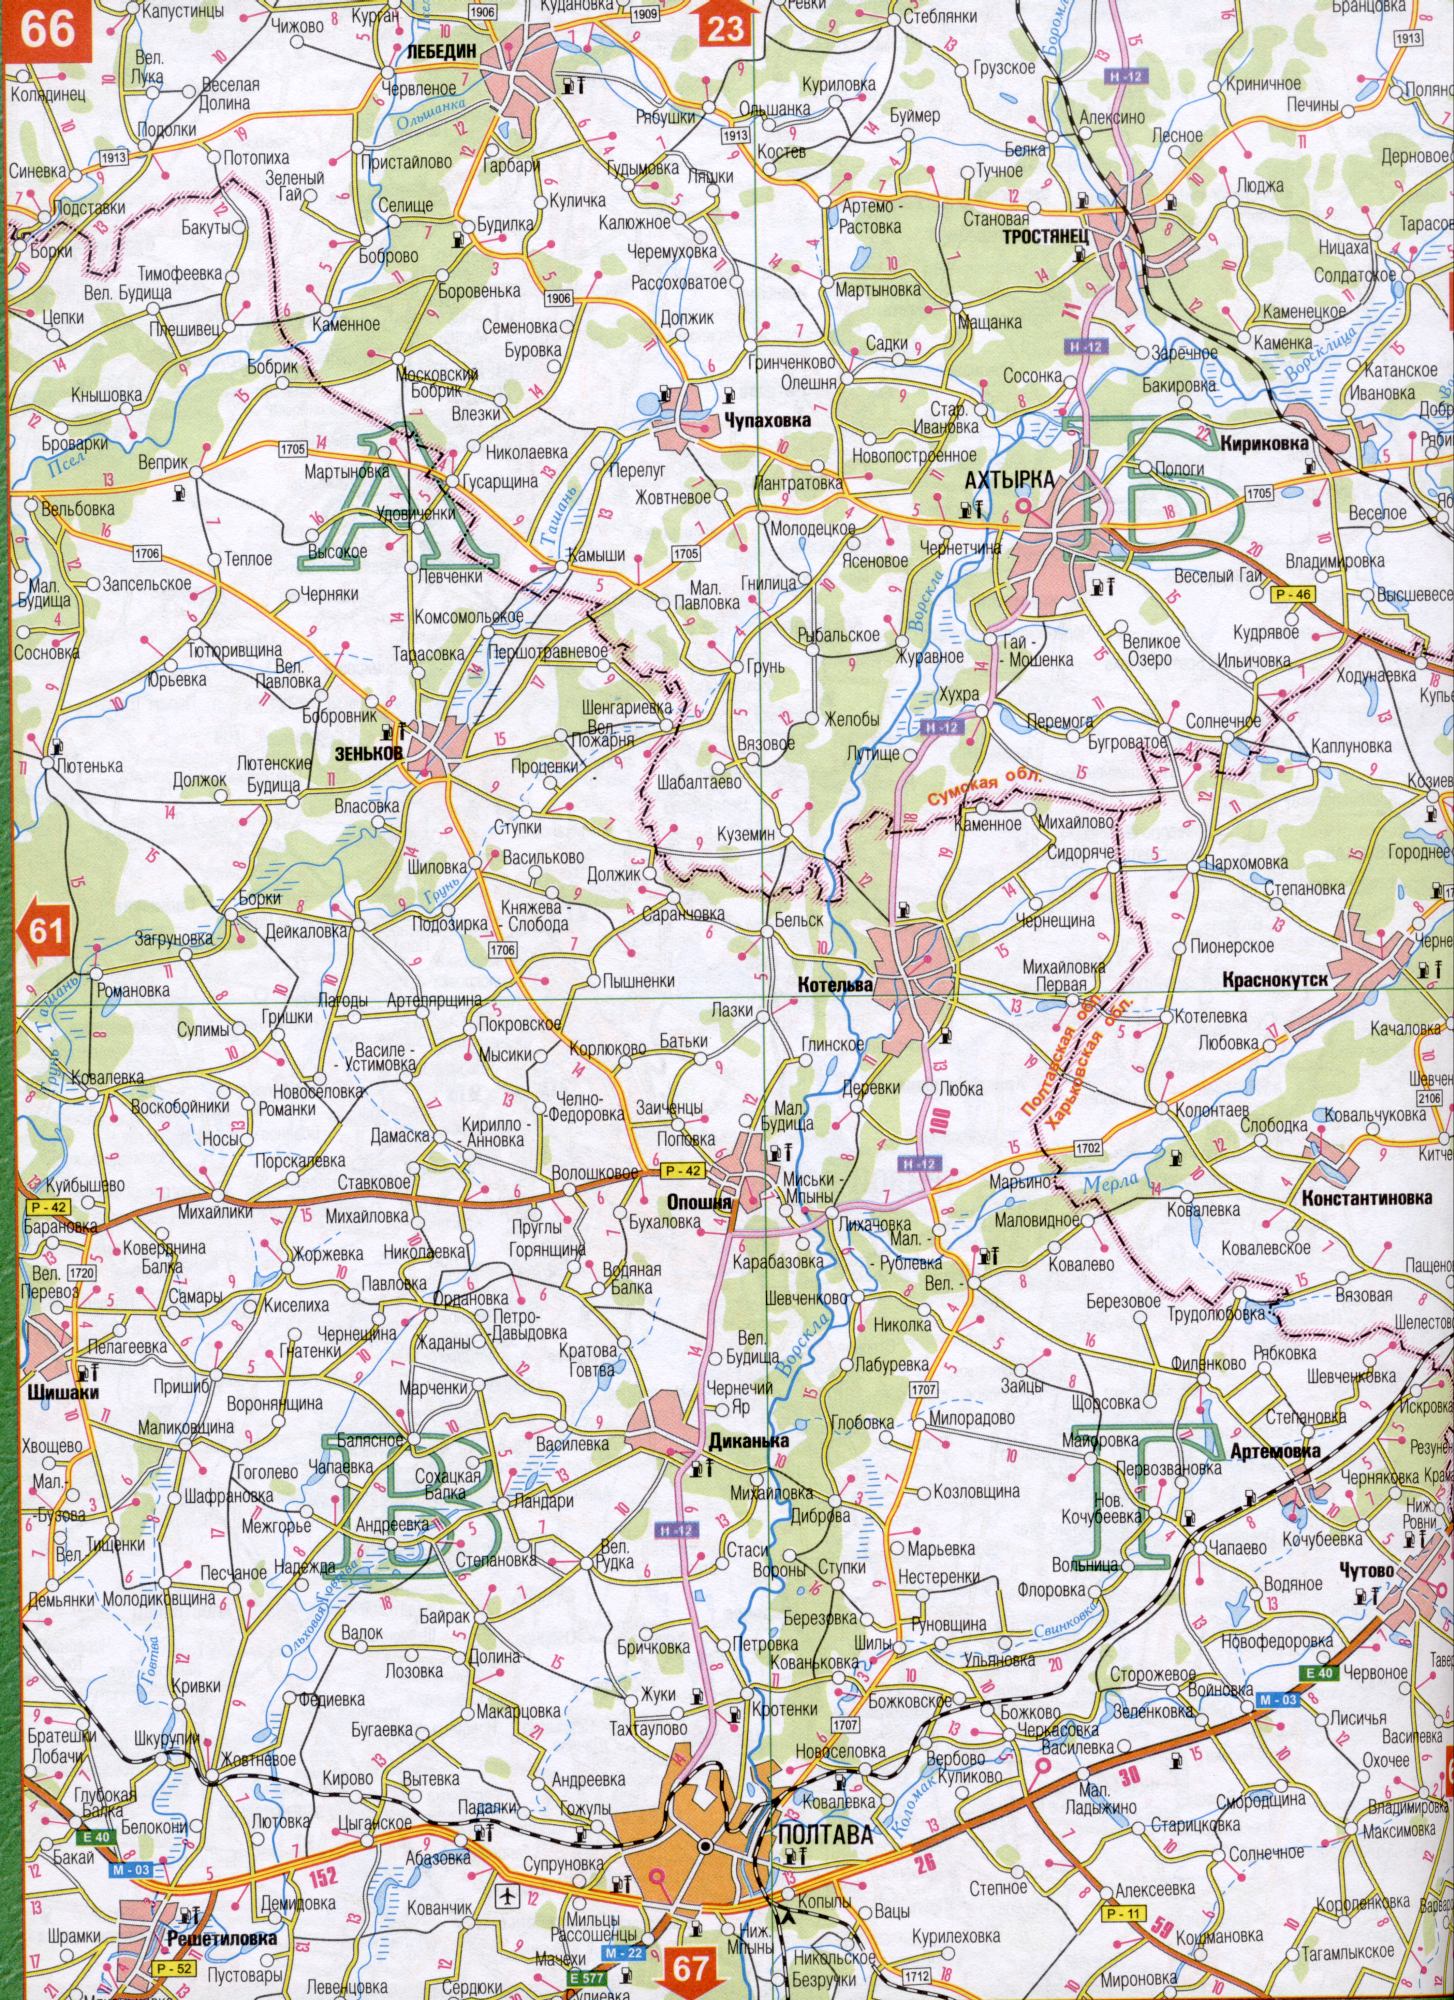 Карта Полтавської області Україна (обласний центр м.Полтава). Завантажити безкоштовно докладну карту, B0 - Ташань, Ницаха, Самари, Бухалівка